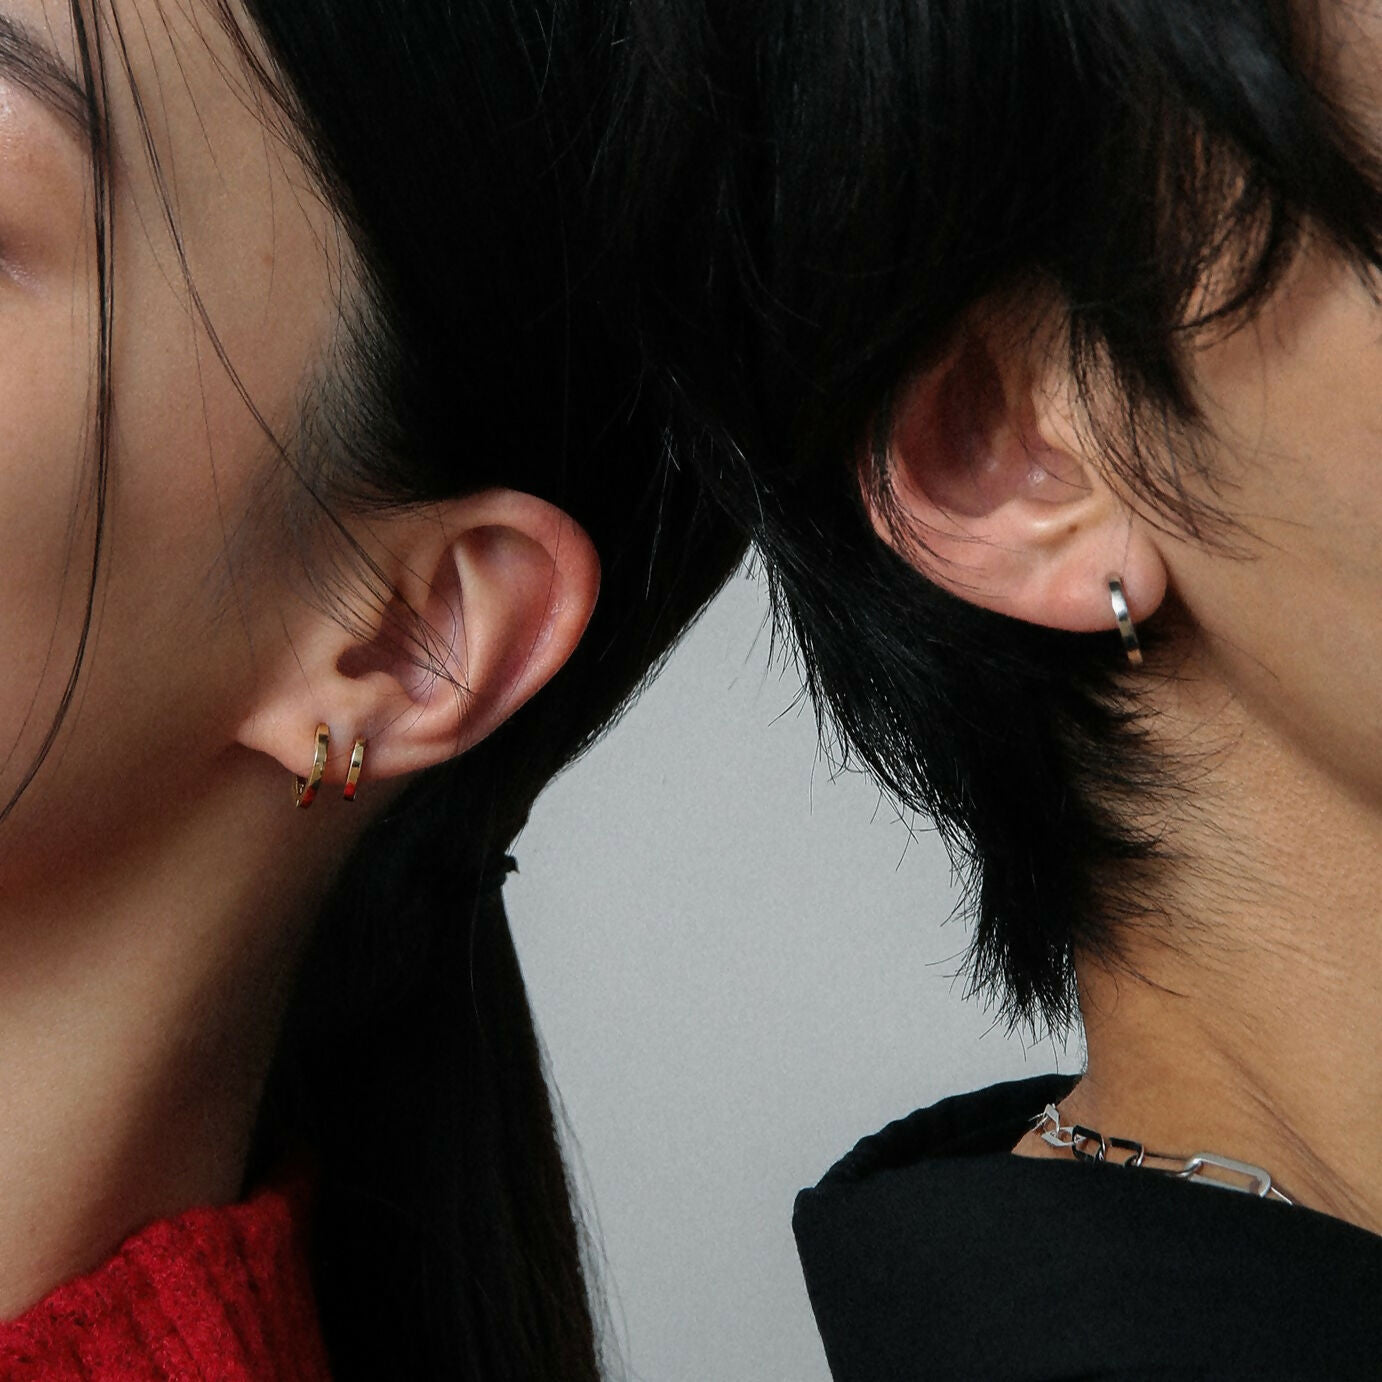 K10 フラット フープピアス：スモール / 10K flat hoop pierced earring - small